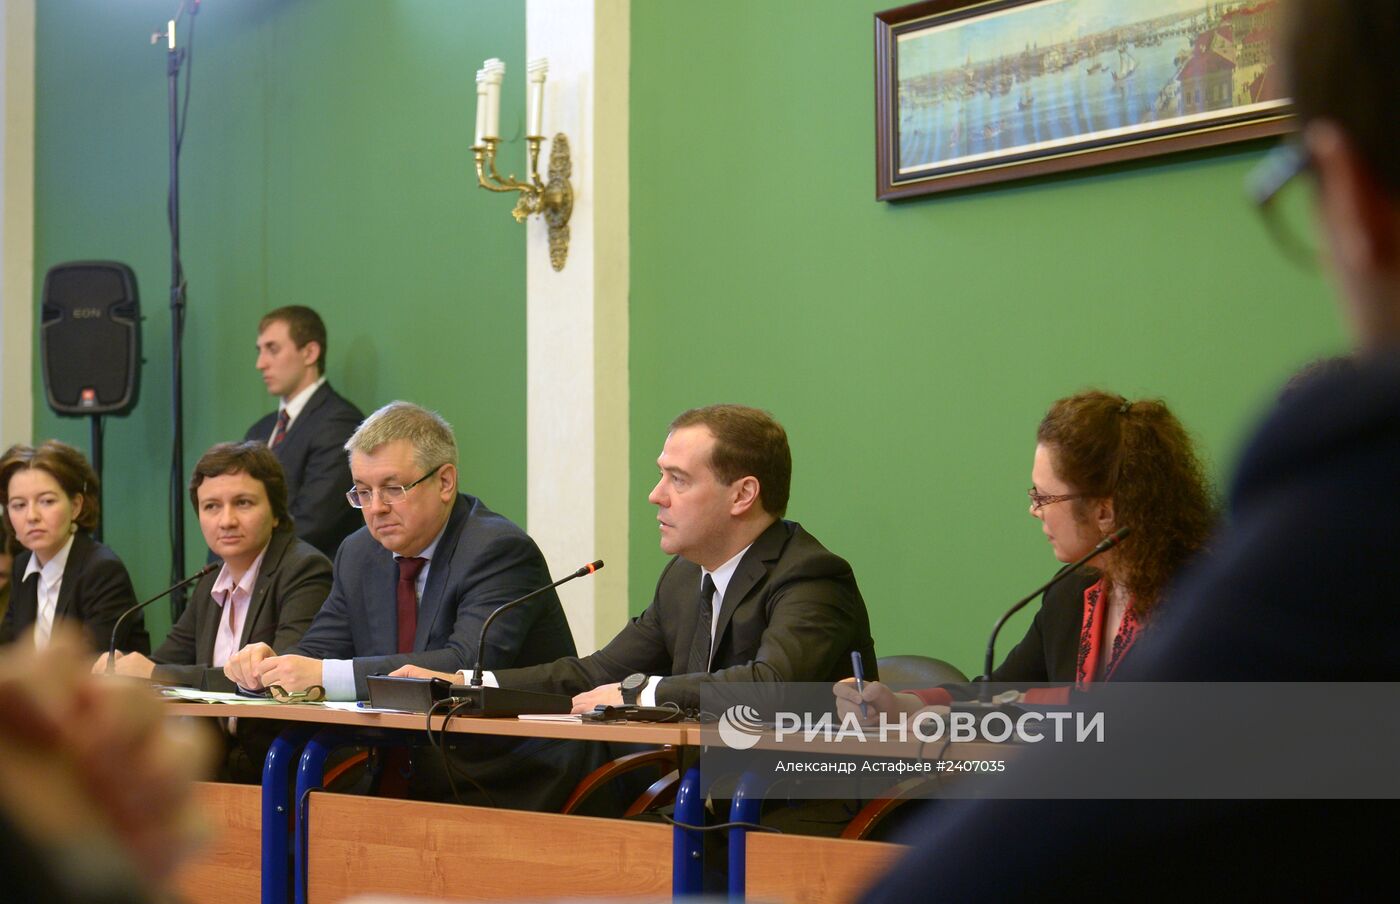 Д.Медведев принял участие в научной конференции "Модернизация экономики и общества"